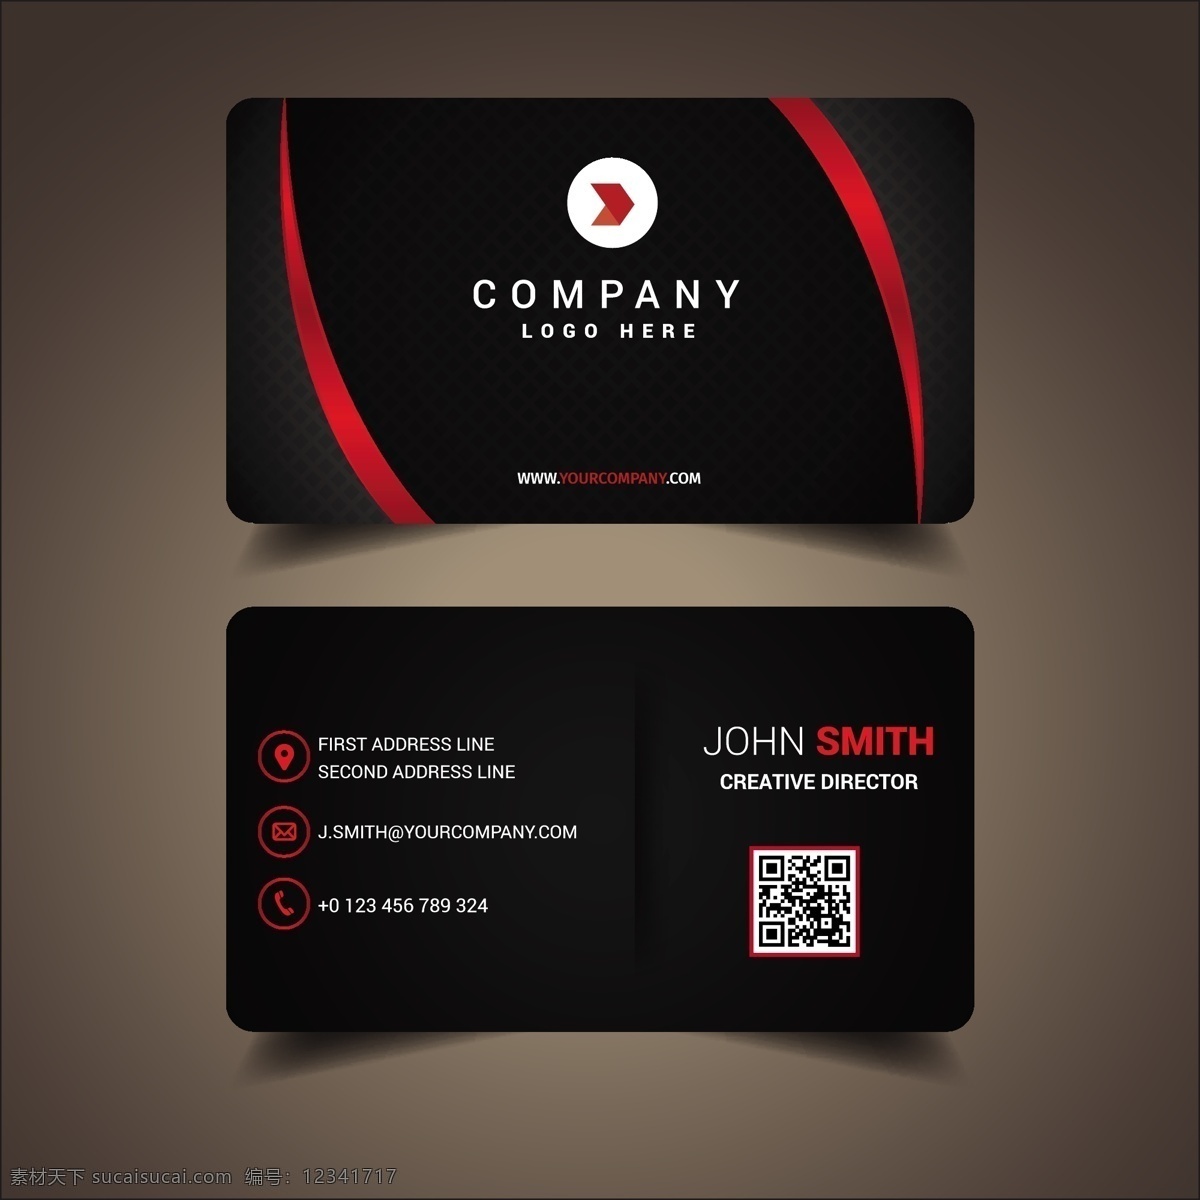 名片模板设计 商标 名片 商业 抽象 卡片 模板 办公室 红色 颜色 展示 文具 公司 抽象标志 企业标识 现代 身份 身份证